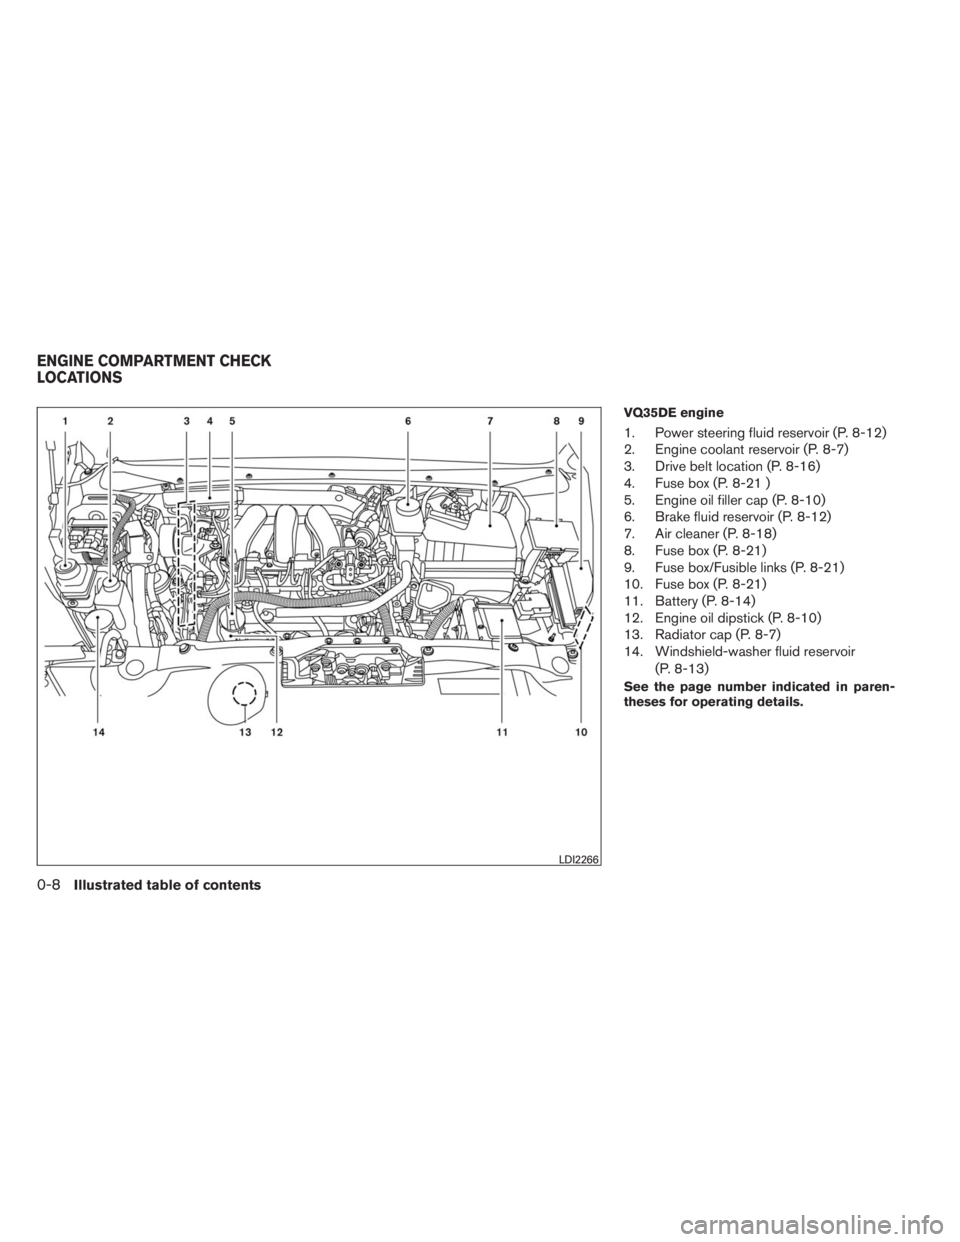 INFINITI QX60 2014 User Guide VQ35DE engine
1. Power steering fluid reservoir (P. 8-12)
2. Engine coolant reservoir (P. 8-7)
3. Drive belt location (P. 8-16)
4. Fuse box (P. 8-21 )
5. Engine oil filler cap (P. 8-10)
6. Brake fluid